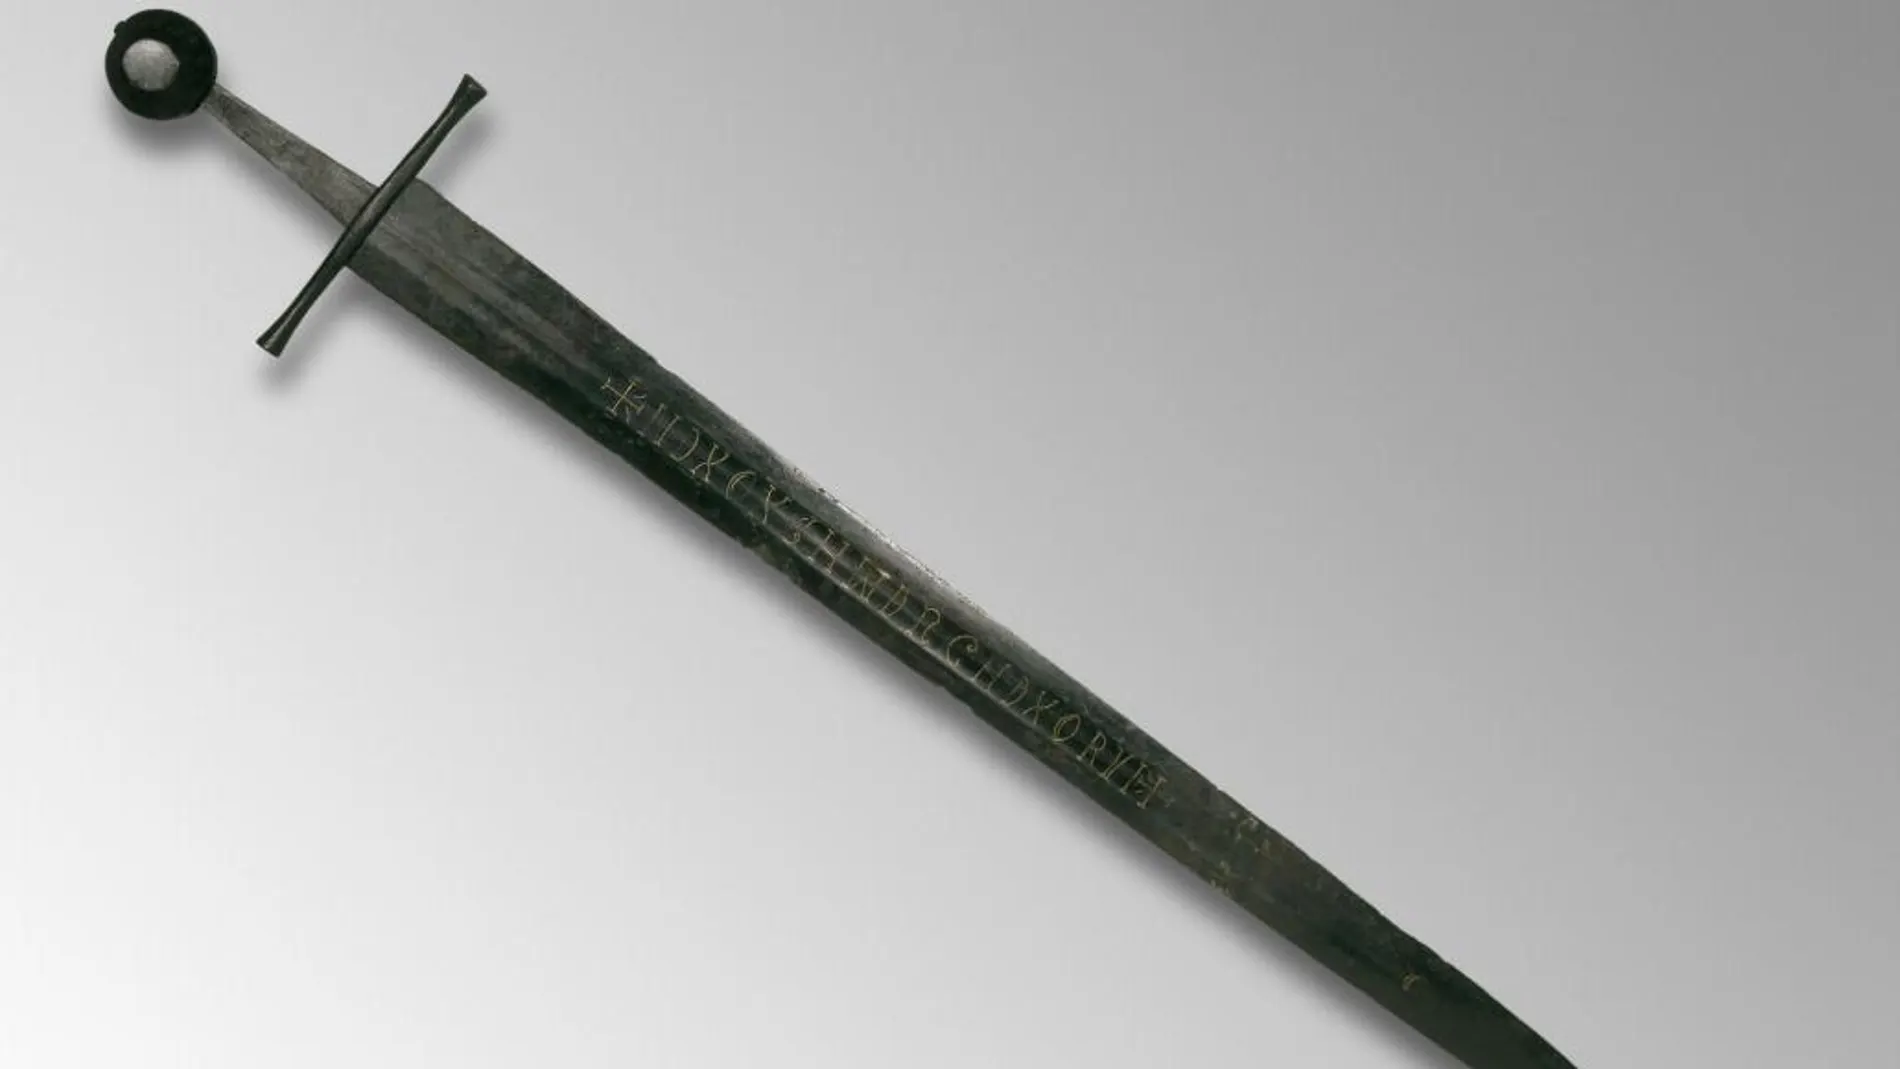 El museo británico pide ayuda para descifrar la inscripción de la espada del siglo XIII